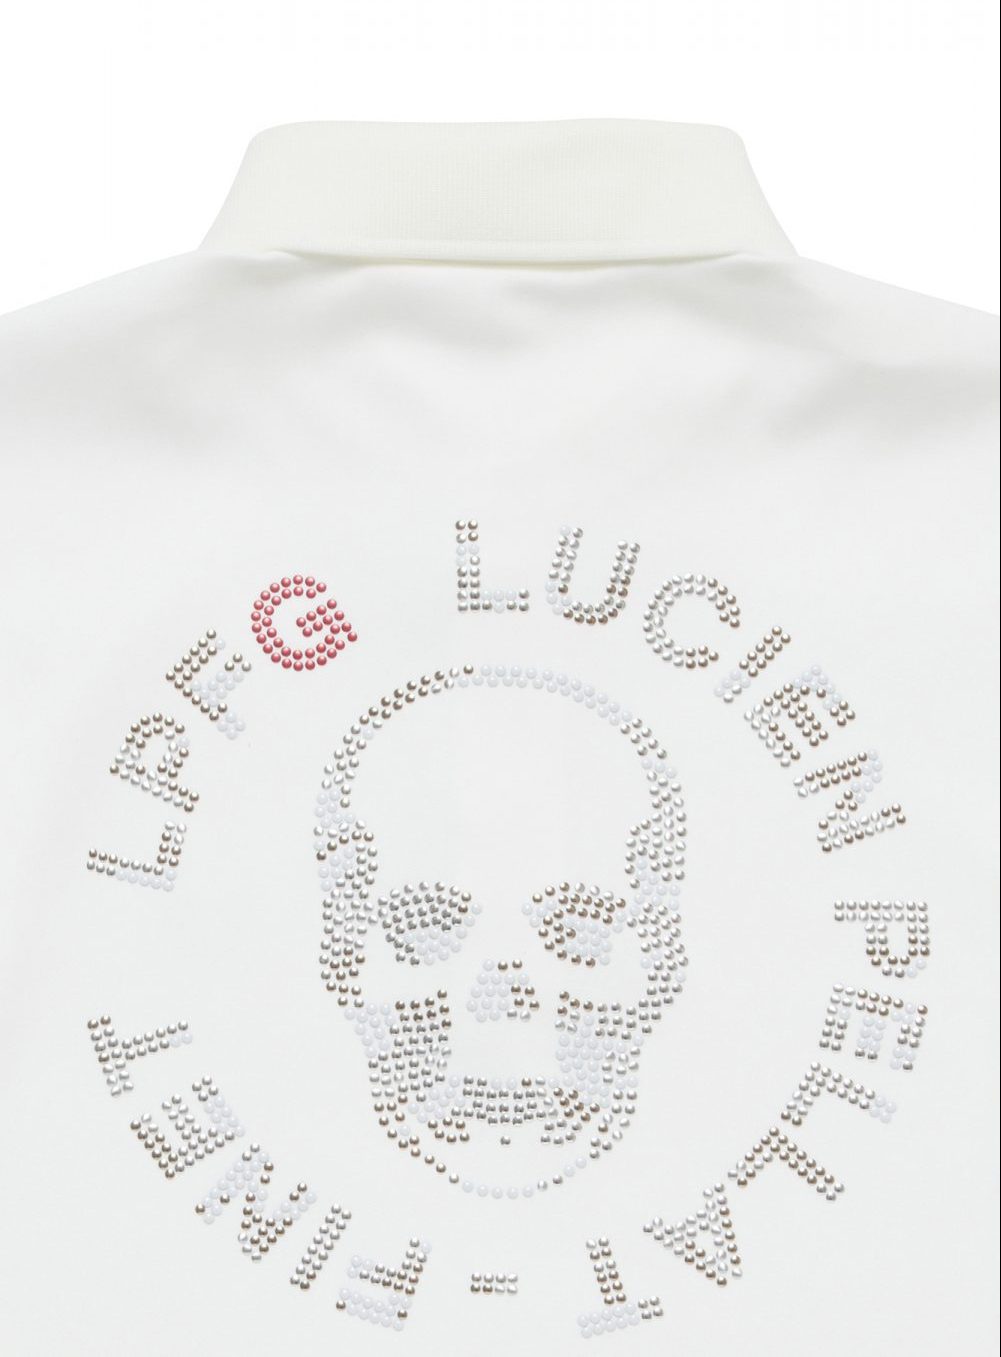 lucien pel lat-f inetは、ゴルフアイテムをラインナップする「LUCIEN PELLAT-FINET LPFG」より、カモフラージュ柄の新作をローンチ。 ルシアンペラフィネ東京ミッドタウン店、ルシアンペラフィネギンザシックス店、公式オンラインブティックにて販売を開始した。